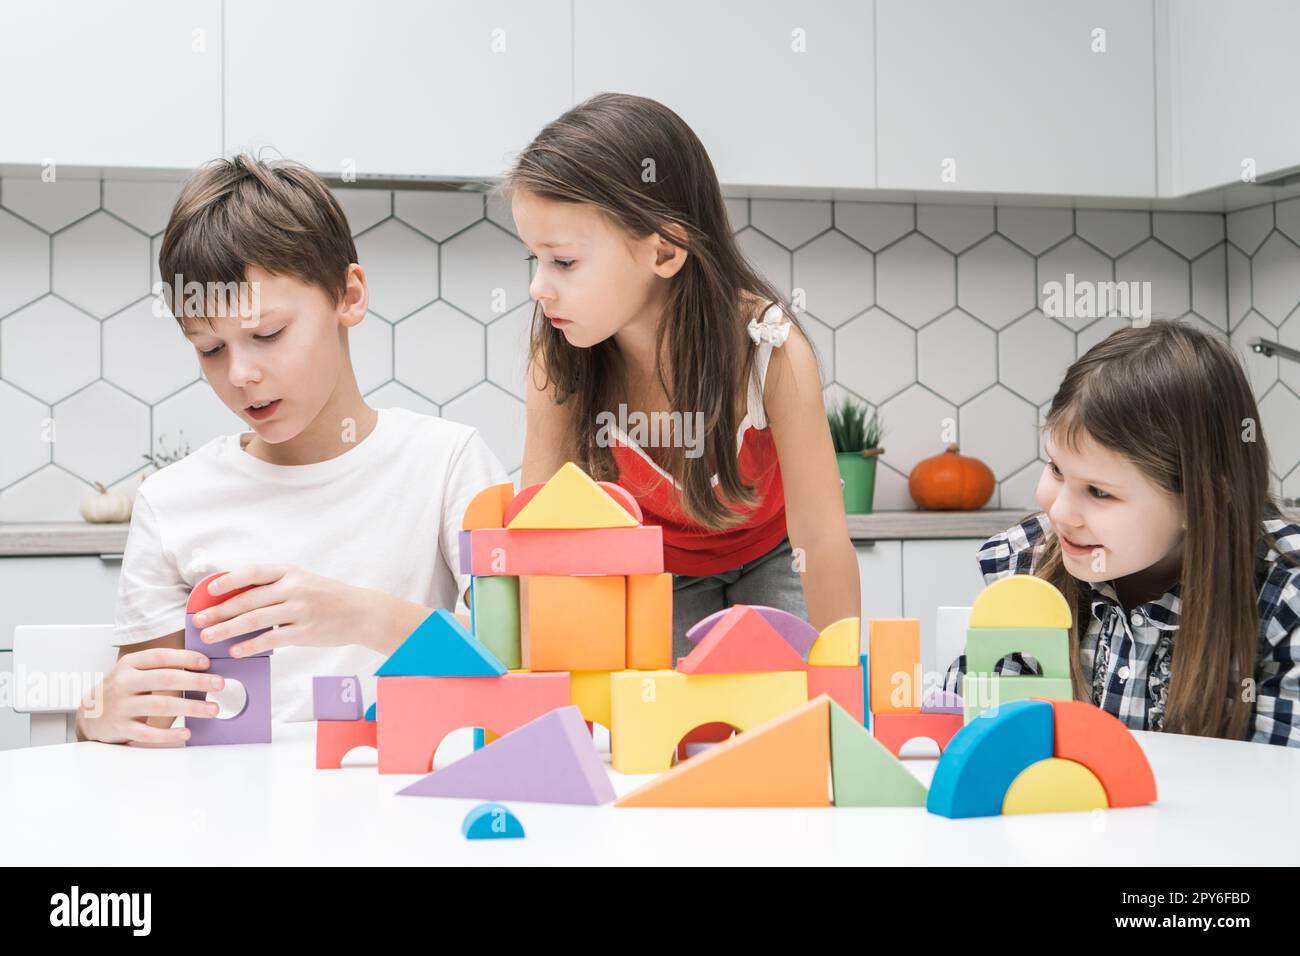 Les petits amis jouent le constructeur sur la table. Les filles regardent garçon collectent des détails colorés de lego. Les enfants construisent une ville de jouets. Banque D'Images